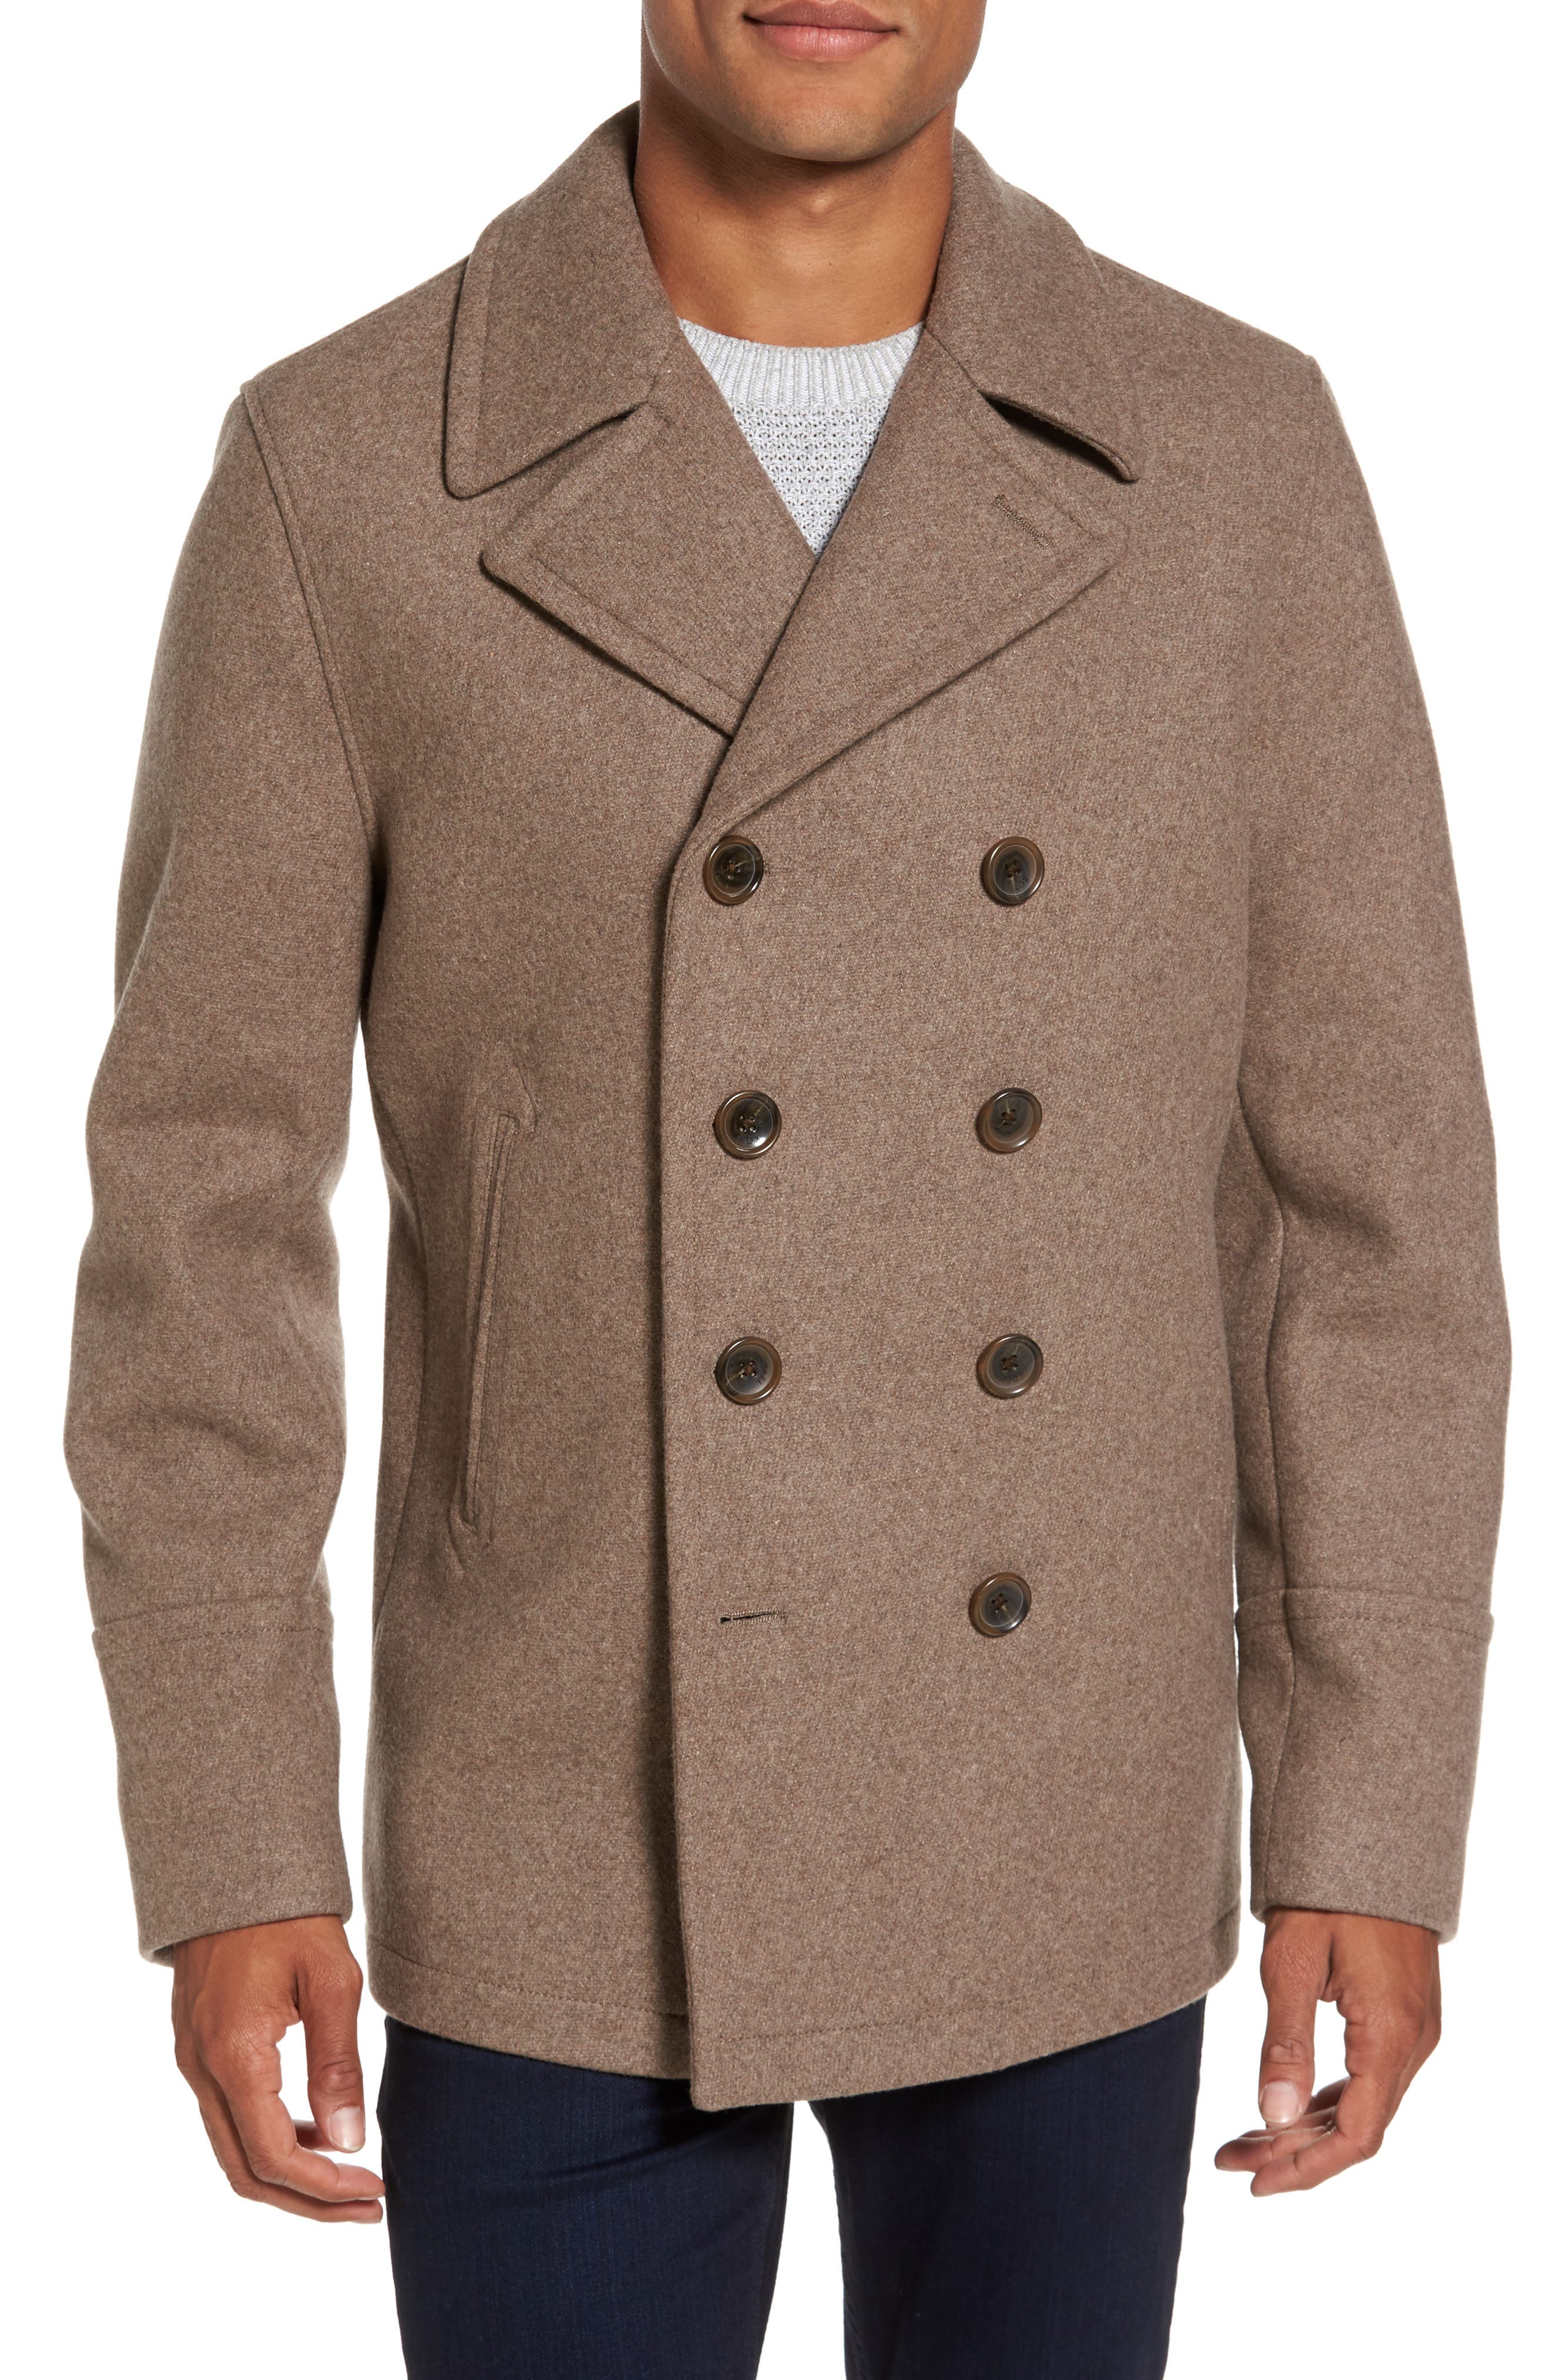 michael kors men's wool pea coat